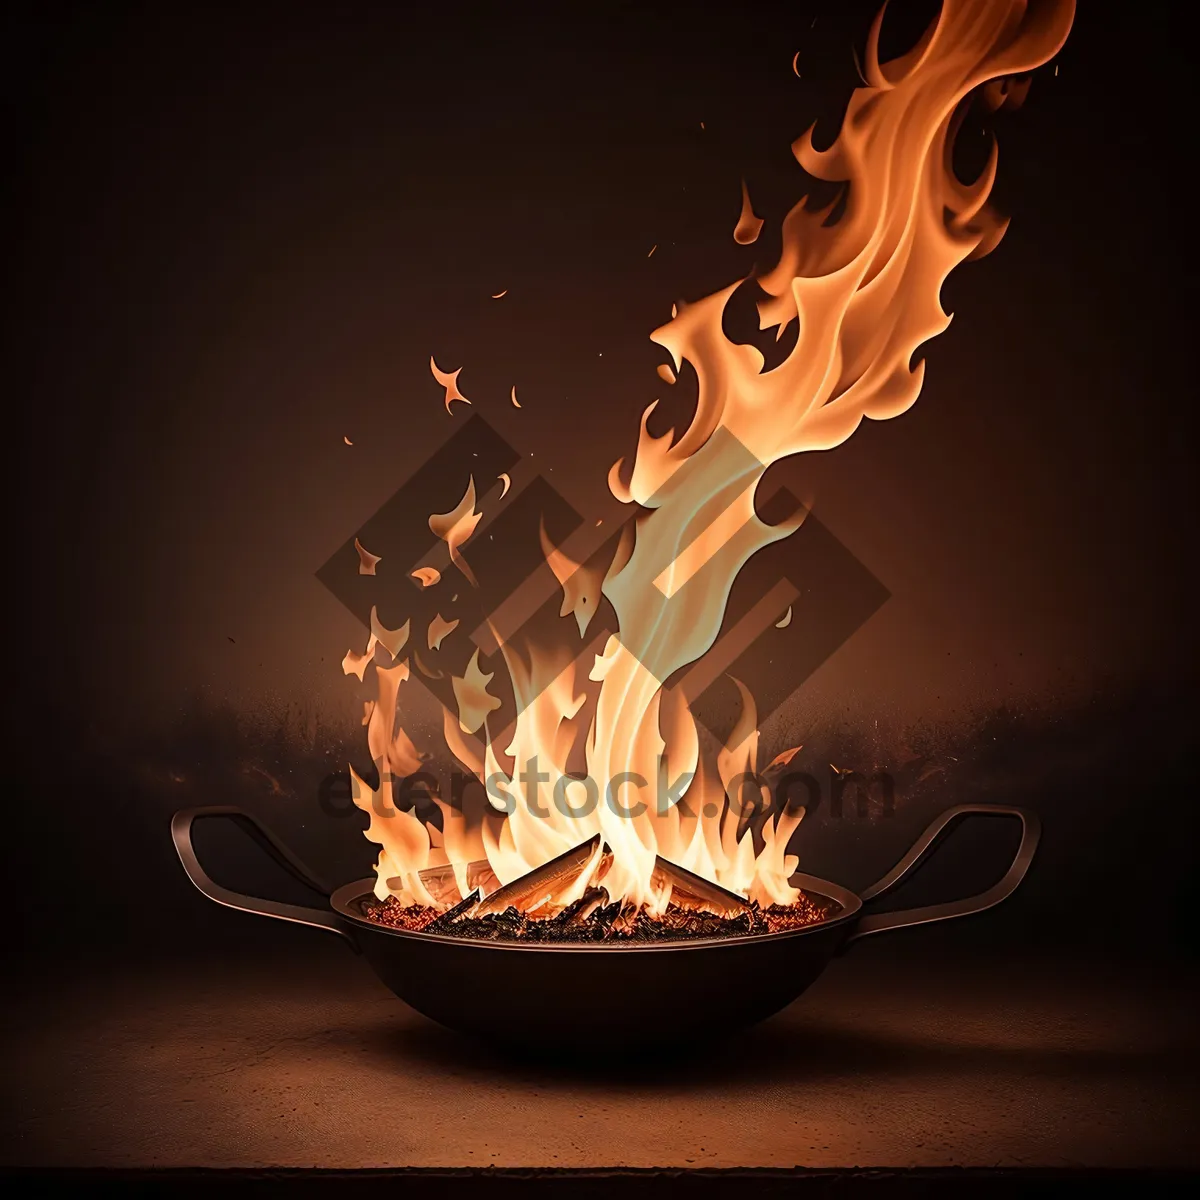 Picture of Fierce Inferno: A Fiery Blaze Engulfs